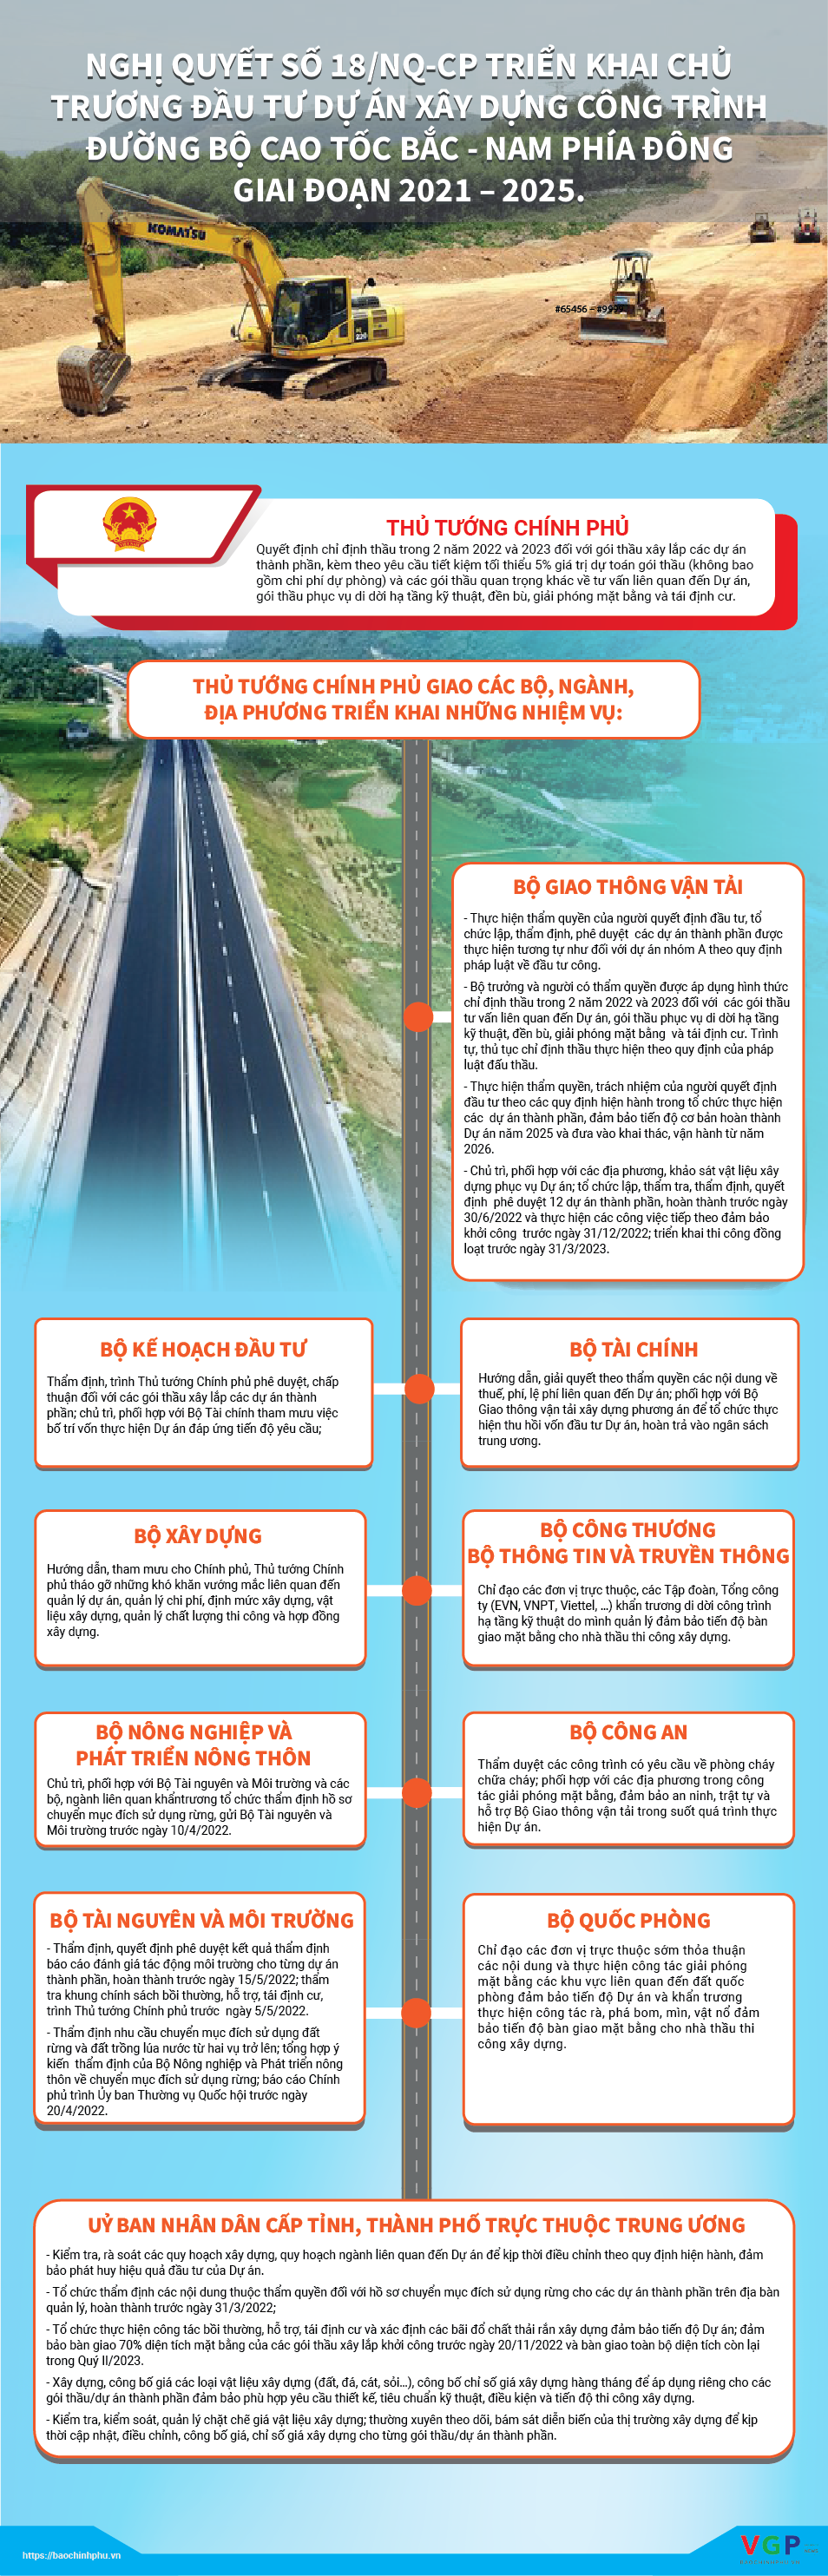 Nghị quyết của Chính phủ triển khai chủ trương đầu tư xây dựng đường bộ cao tốc Bắc-Nam phía đông giai đoạn 2021-2025 - Ảnh 1